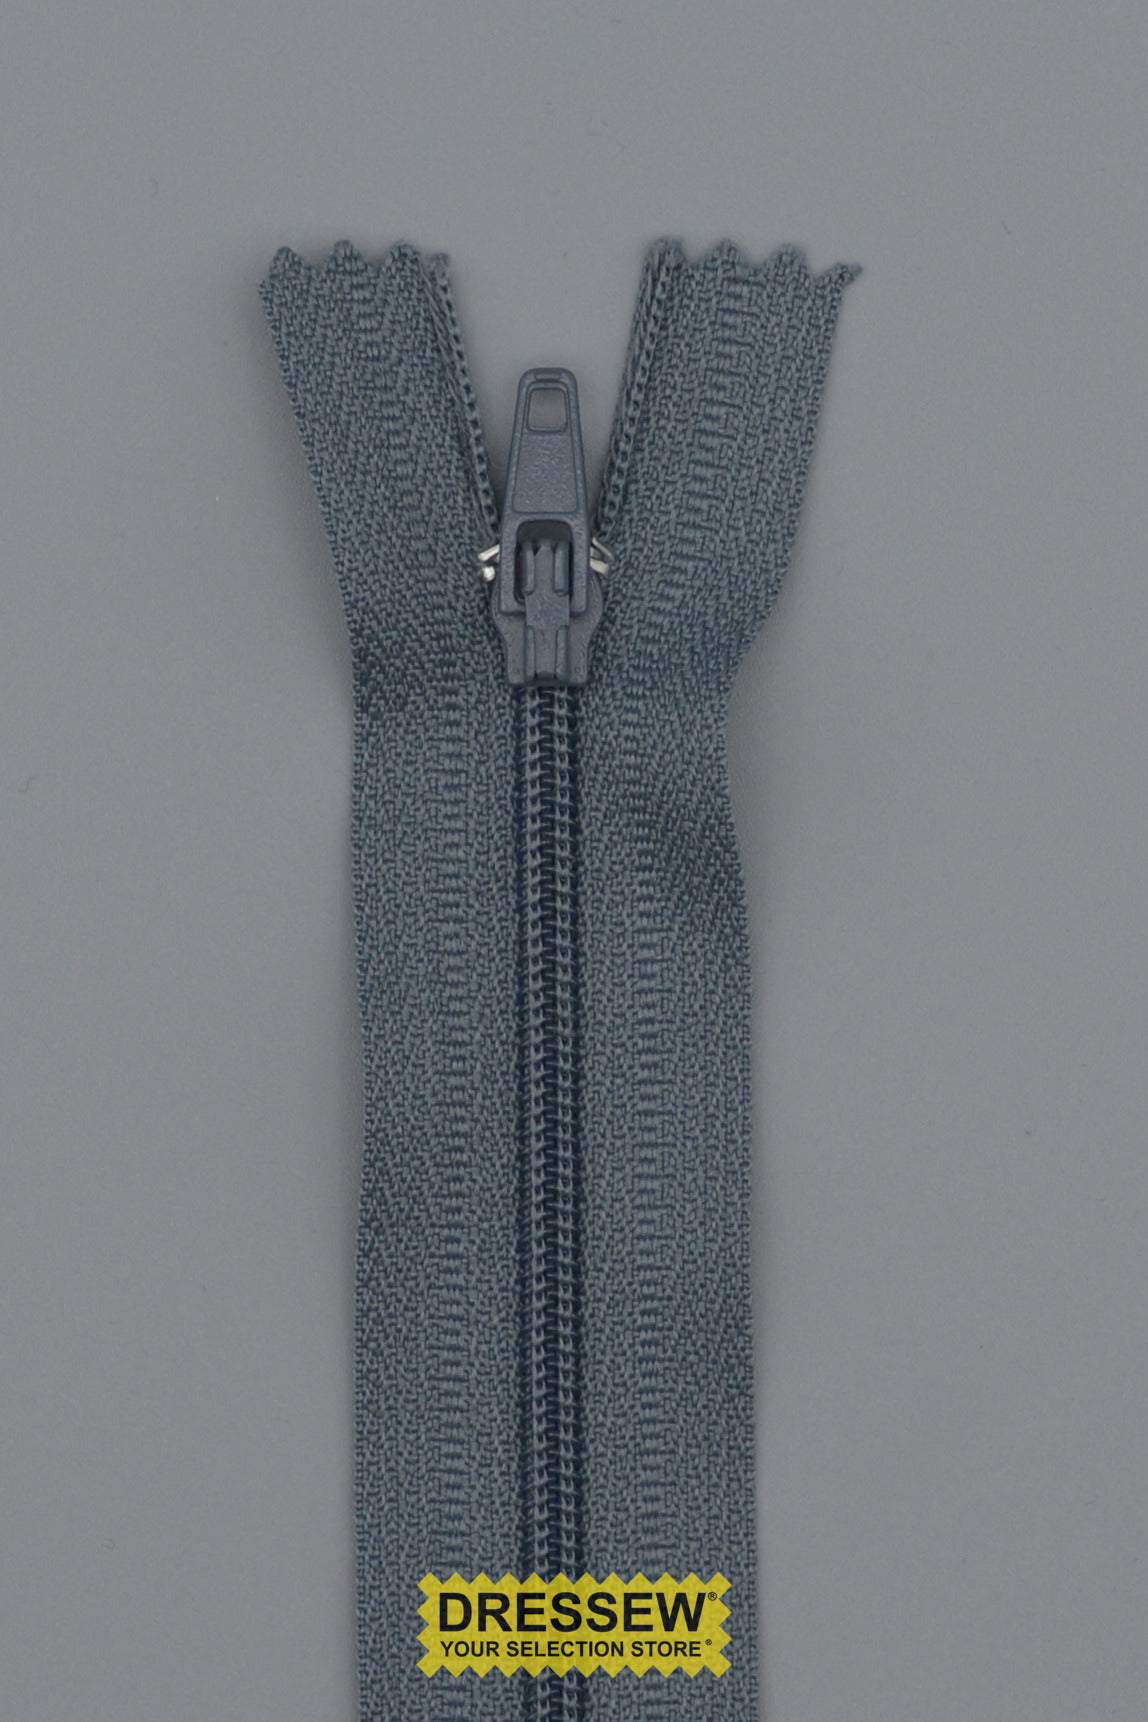 #3 Fine Coil Closed End Zipper 20cm (8") Rail